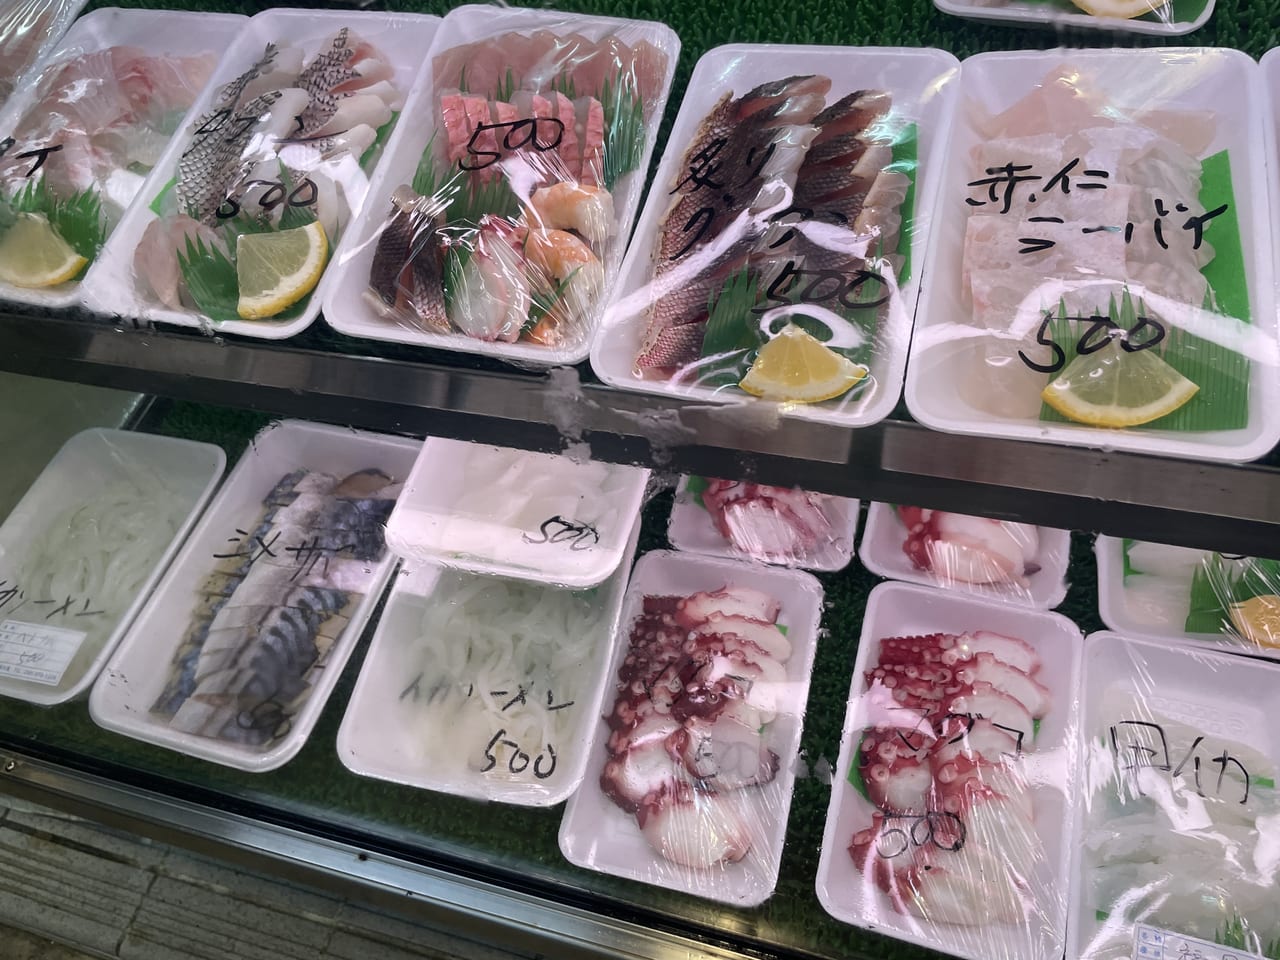 うるま市 おうちで新鮮なお魚を食べよう 沖縄県内外から仕入れた 伊波水産 の新鮮なお刺身はいかがですか 号外net 沖縄市 うるま市